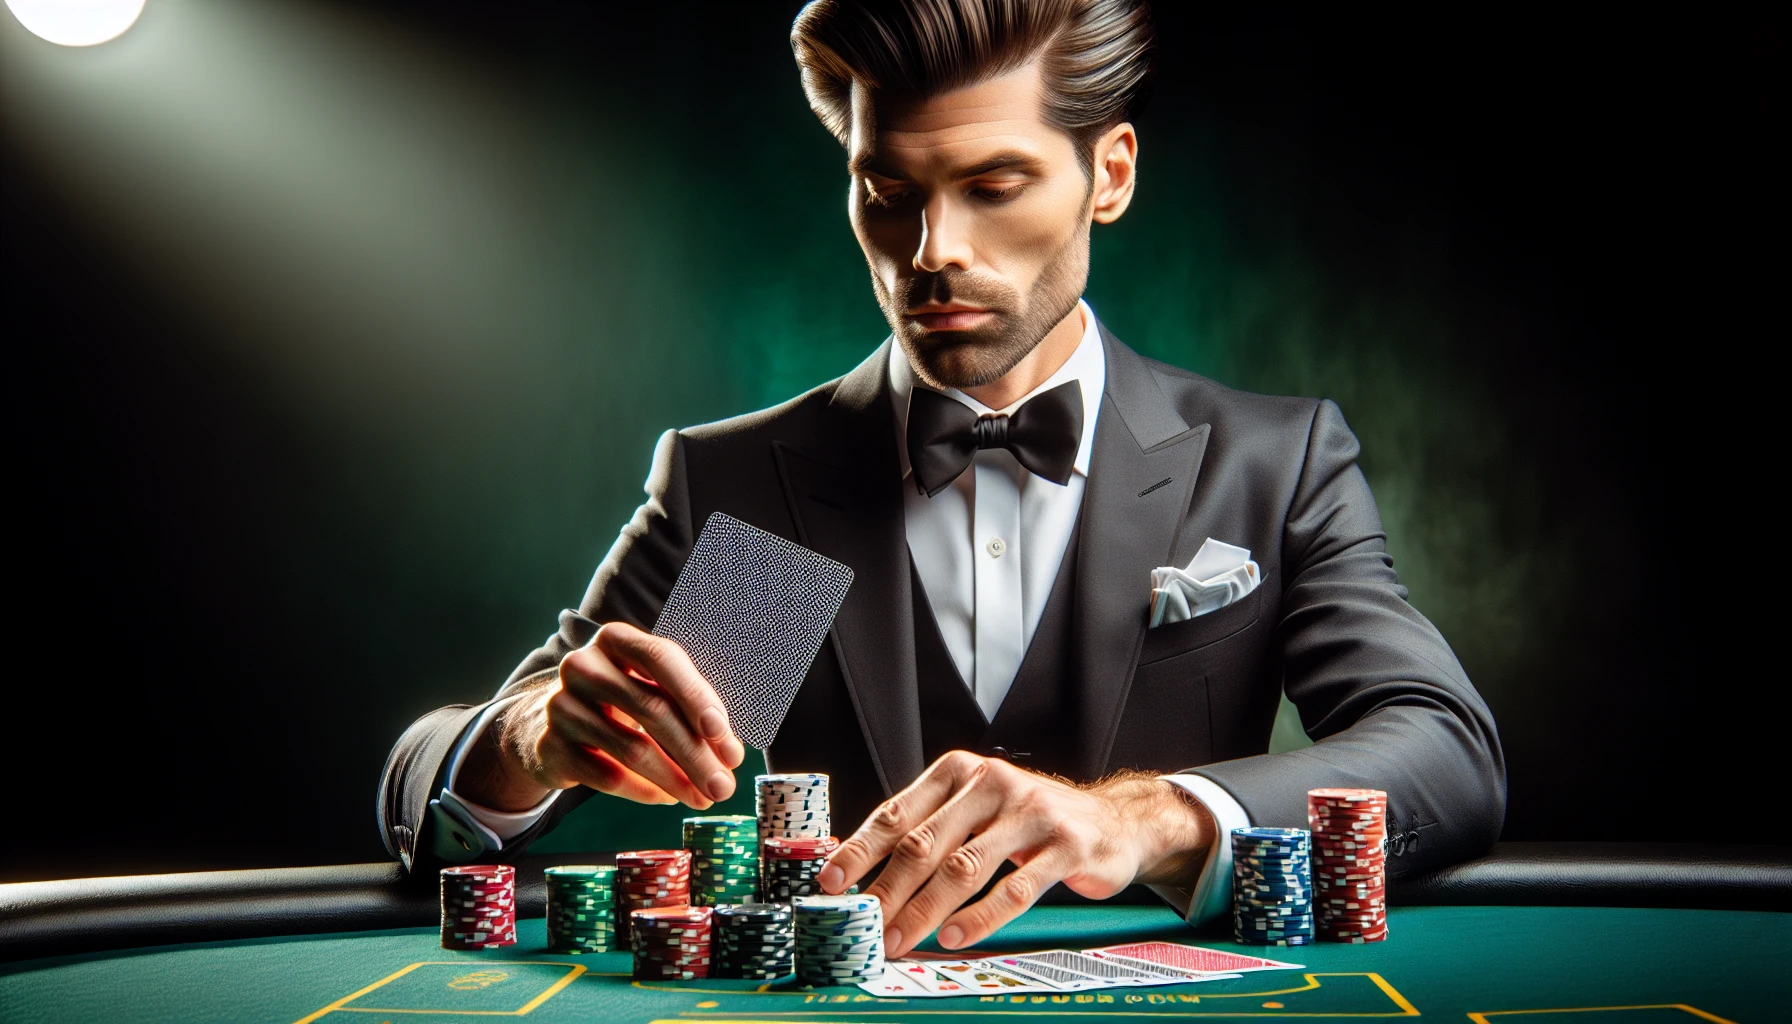 Illustration of a casino dealer demonstrating excellent card handling and chip management skills